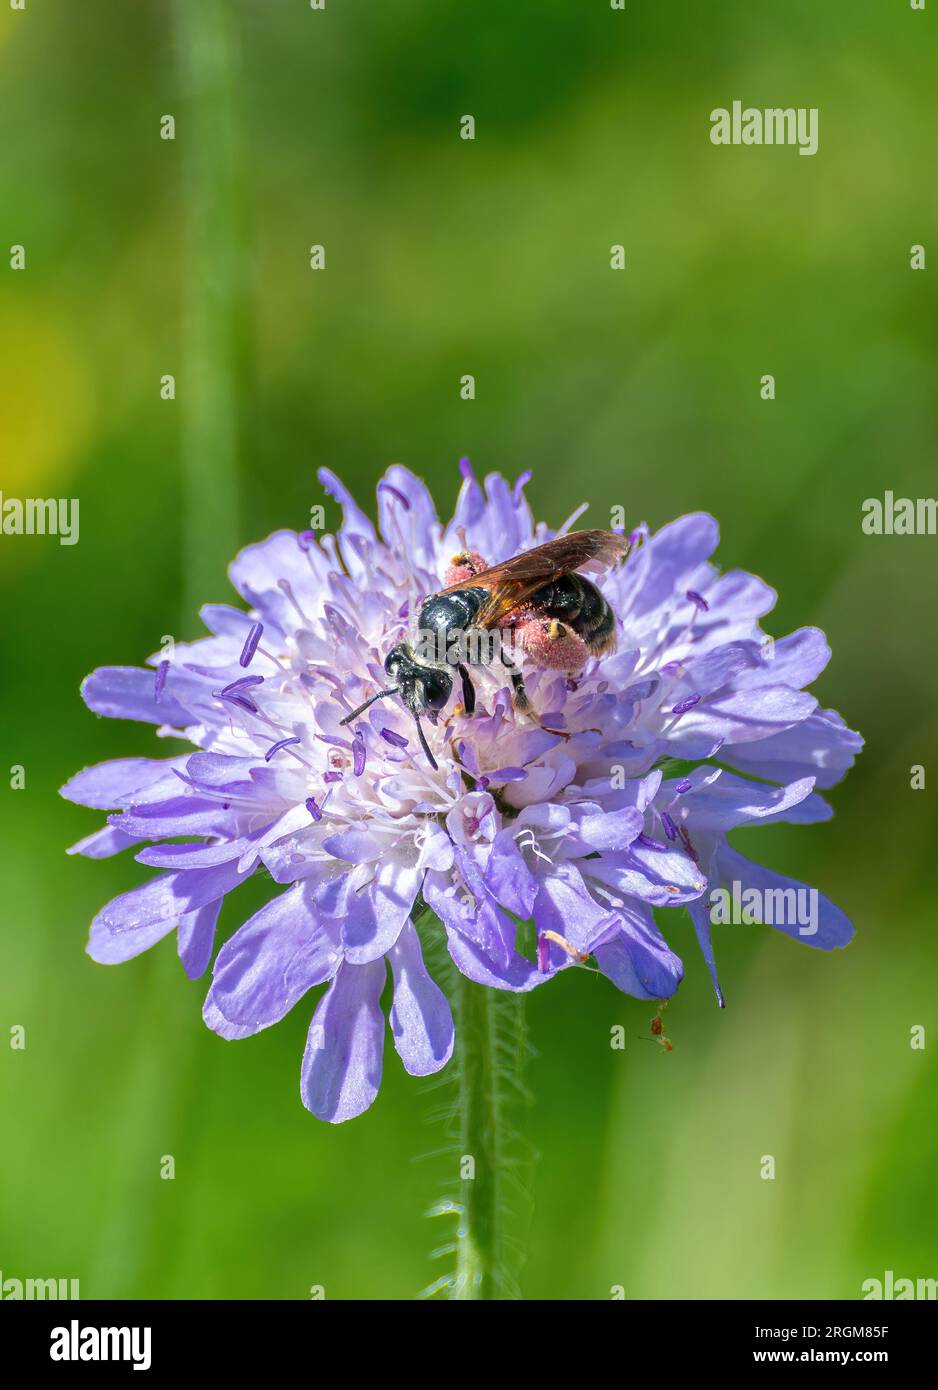 Grande abeille minière scabieuse (Andrena hattorfiana) avec des grains de pollen rose sur les pattes arrière, sur la fleur sauvage scabieuse des champs pendant l'été, Angleterre, Royaume-Uni Banque D'Images